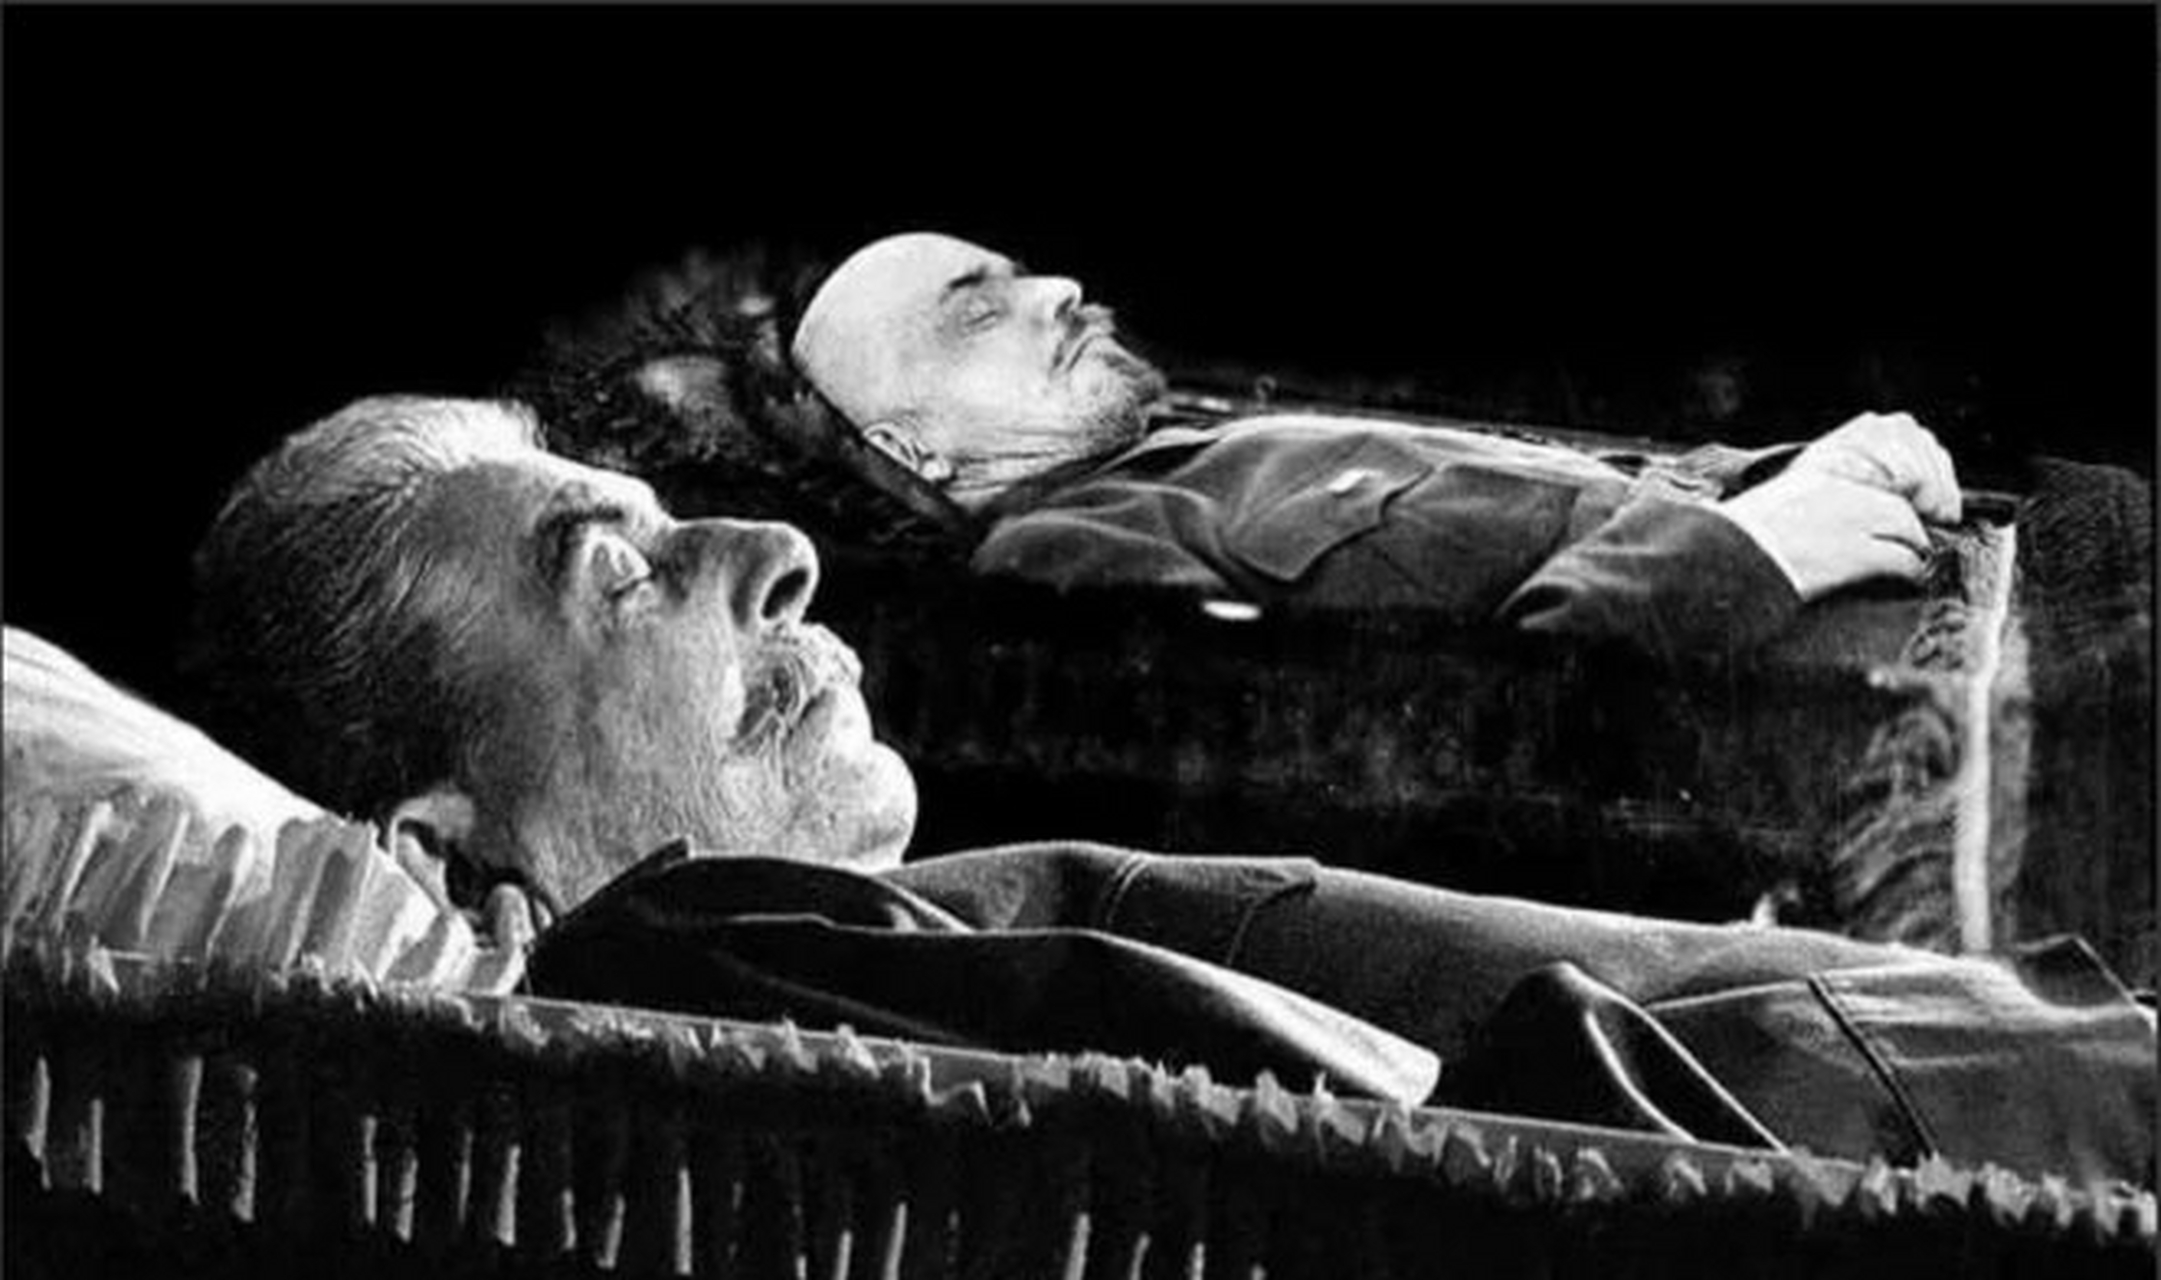 1953年,斯大林突然去世,他的遗体被放在水晶棺里,与列宁的遗体并排